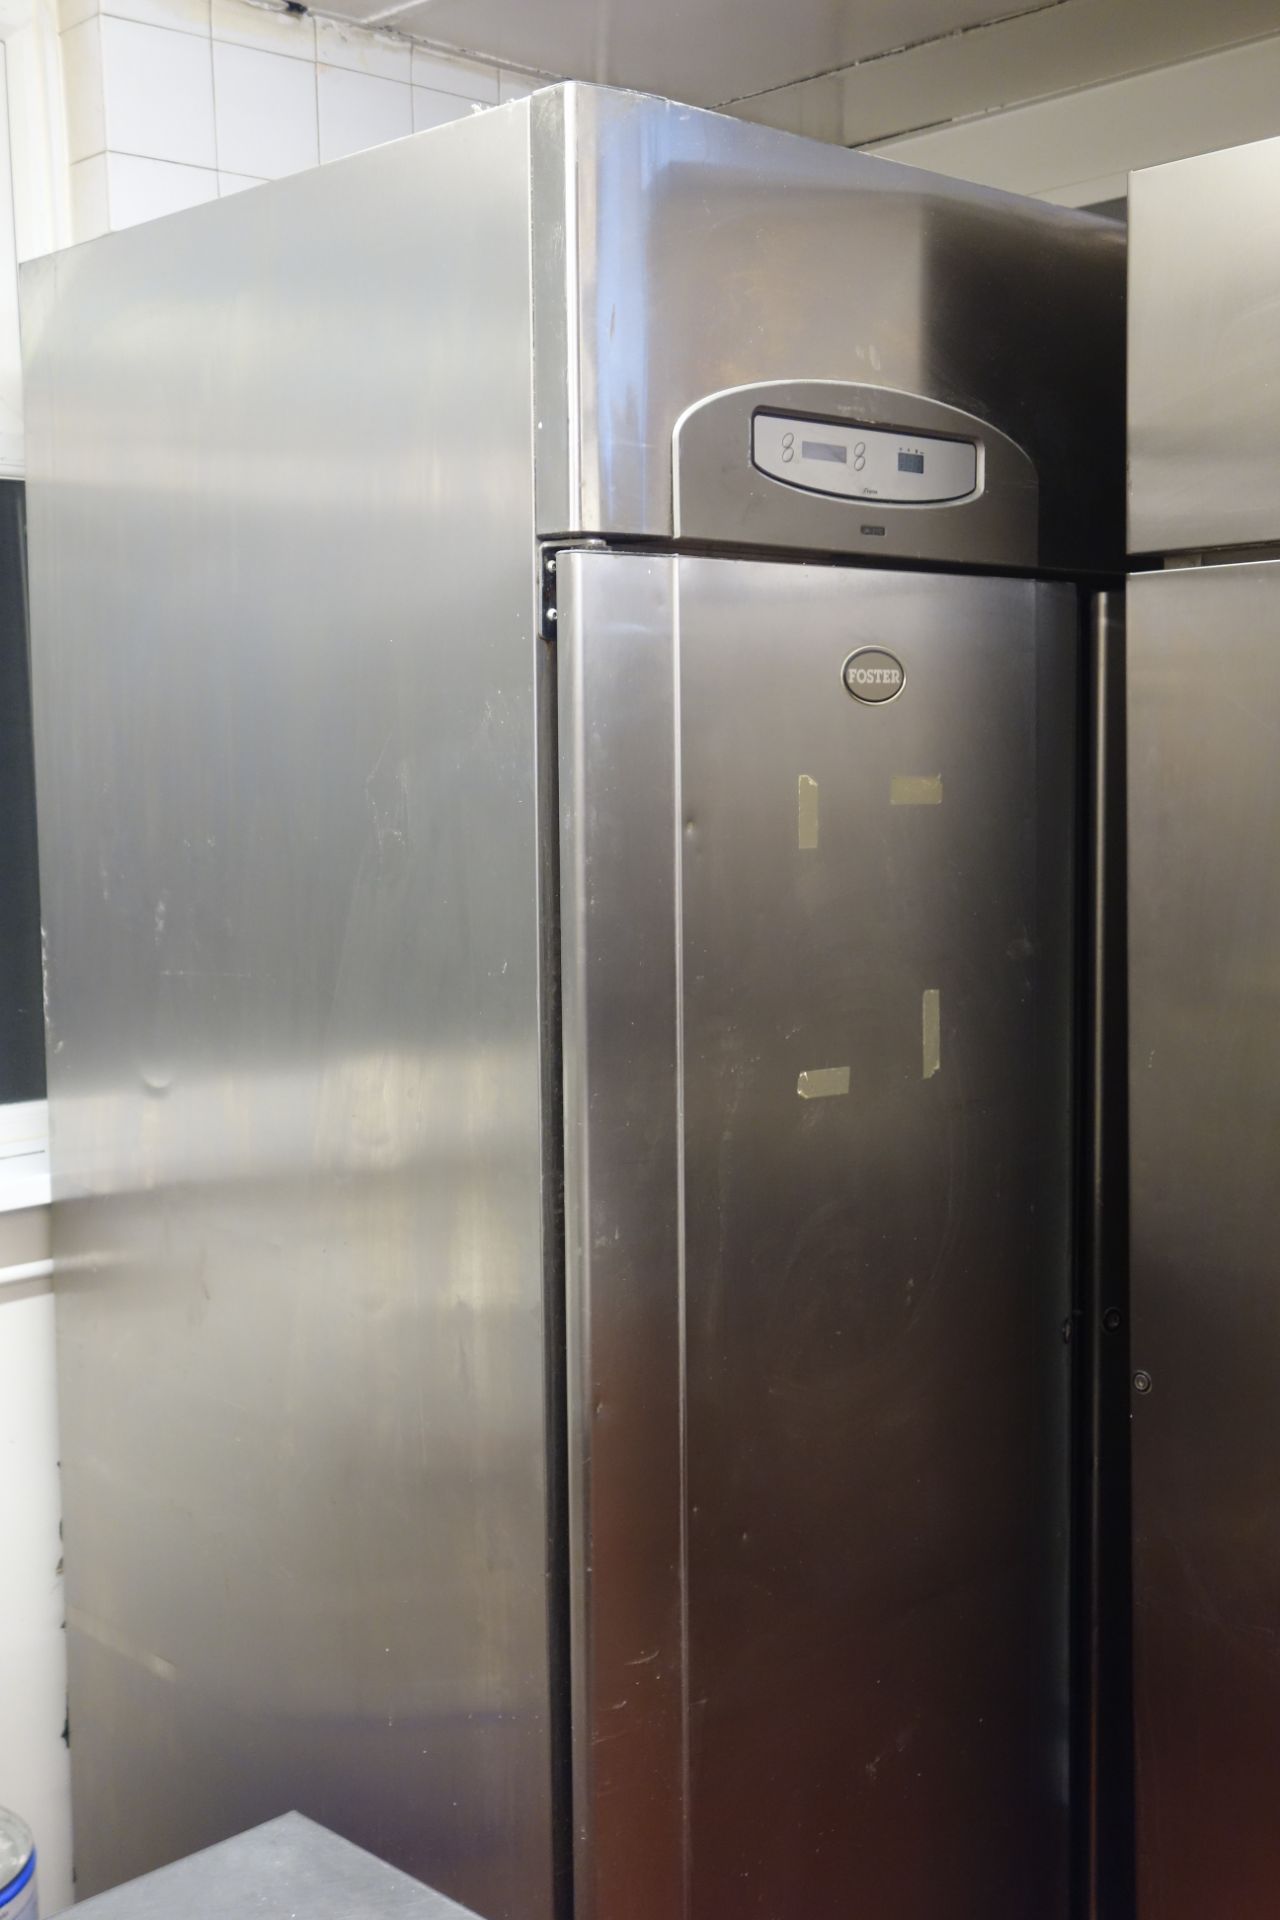 Foster double commercial rack freezer, W140cm, H209cm, D93cm,